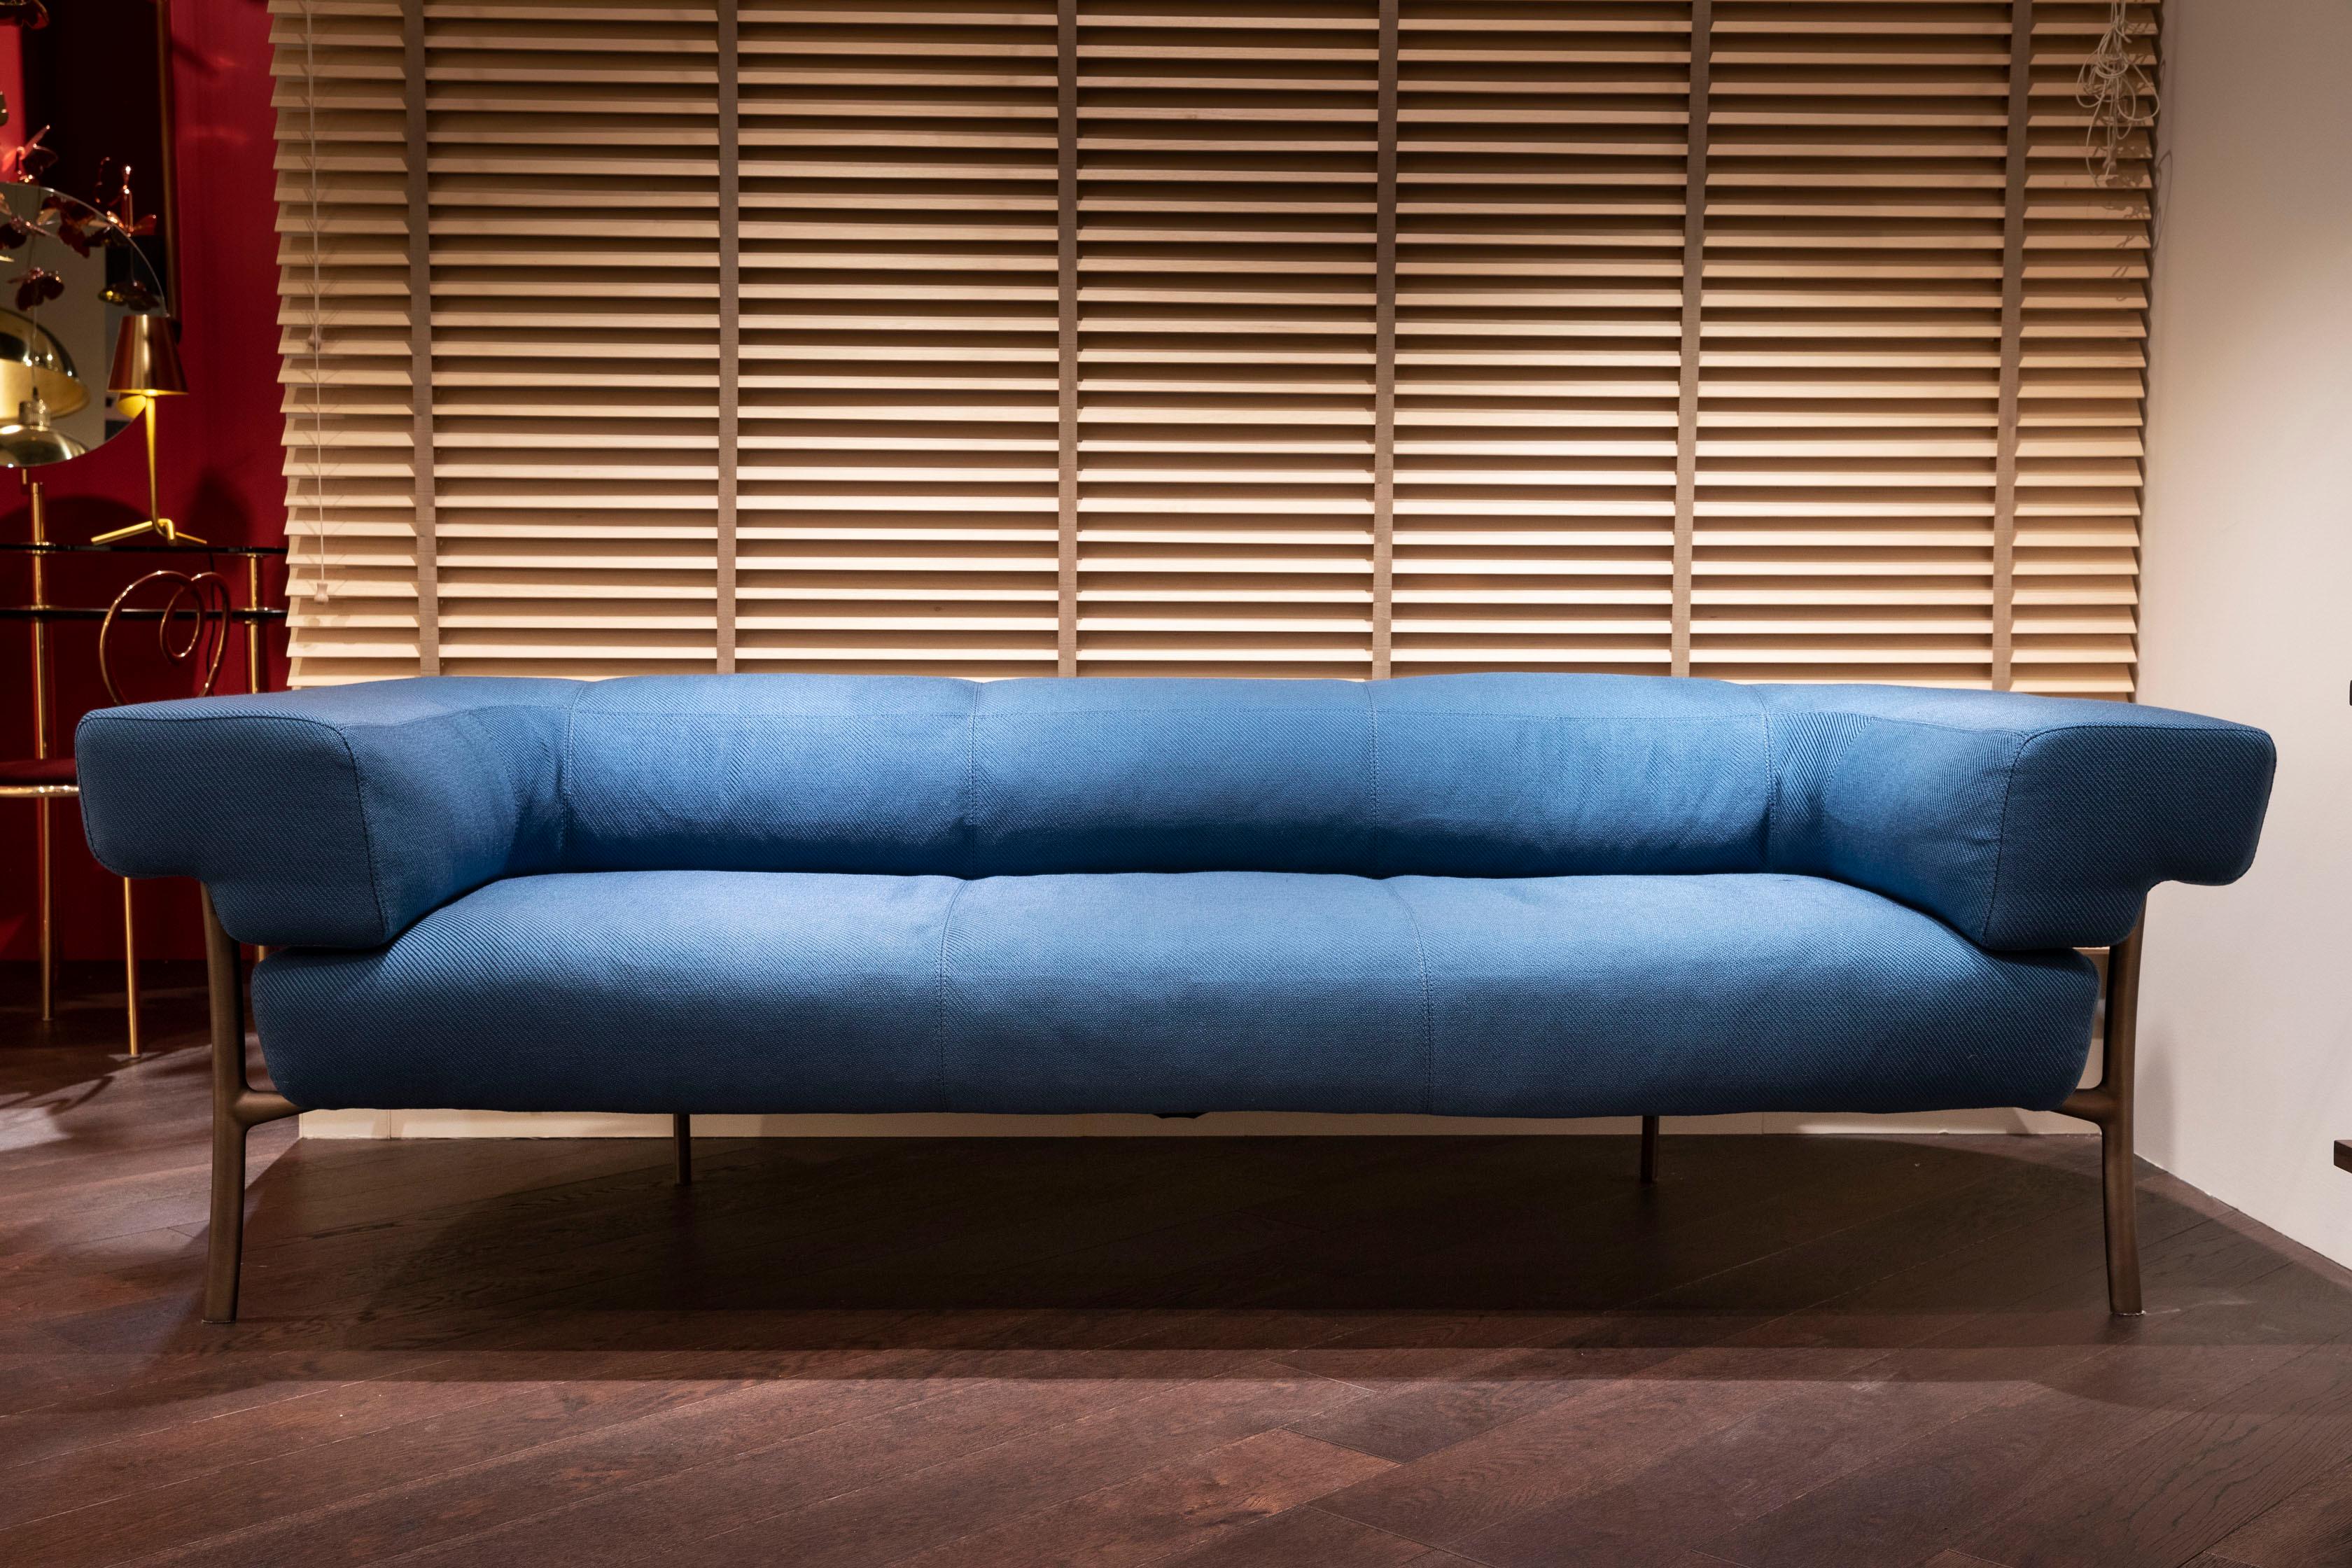 Ghidini 1961 Katana 2-Seat Sofa in Fabric by Paolo Rizzatto For Sale 1